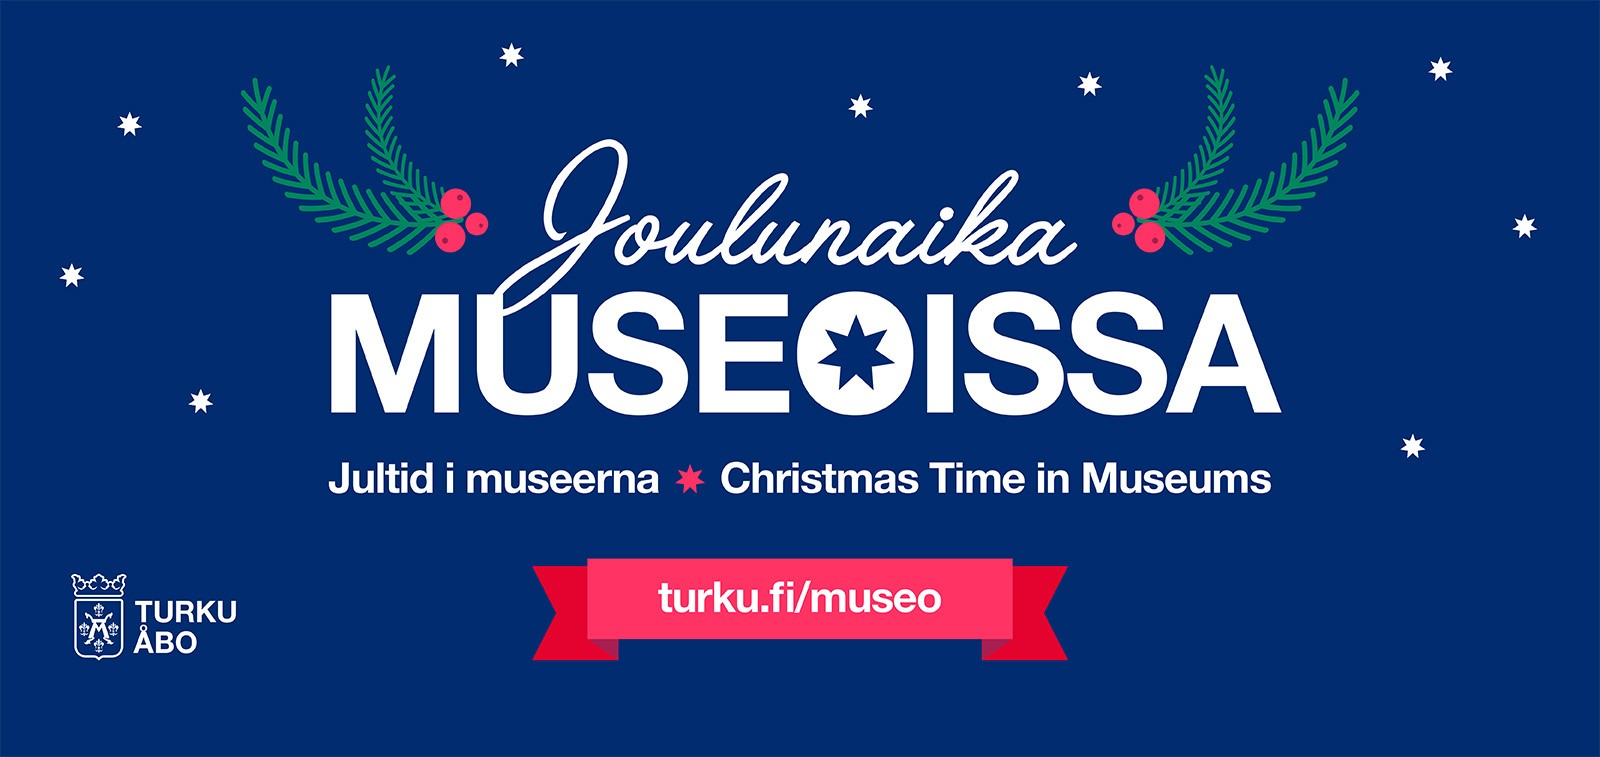 Joulunaika museoissa -tekstikuva